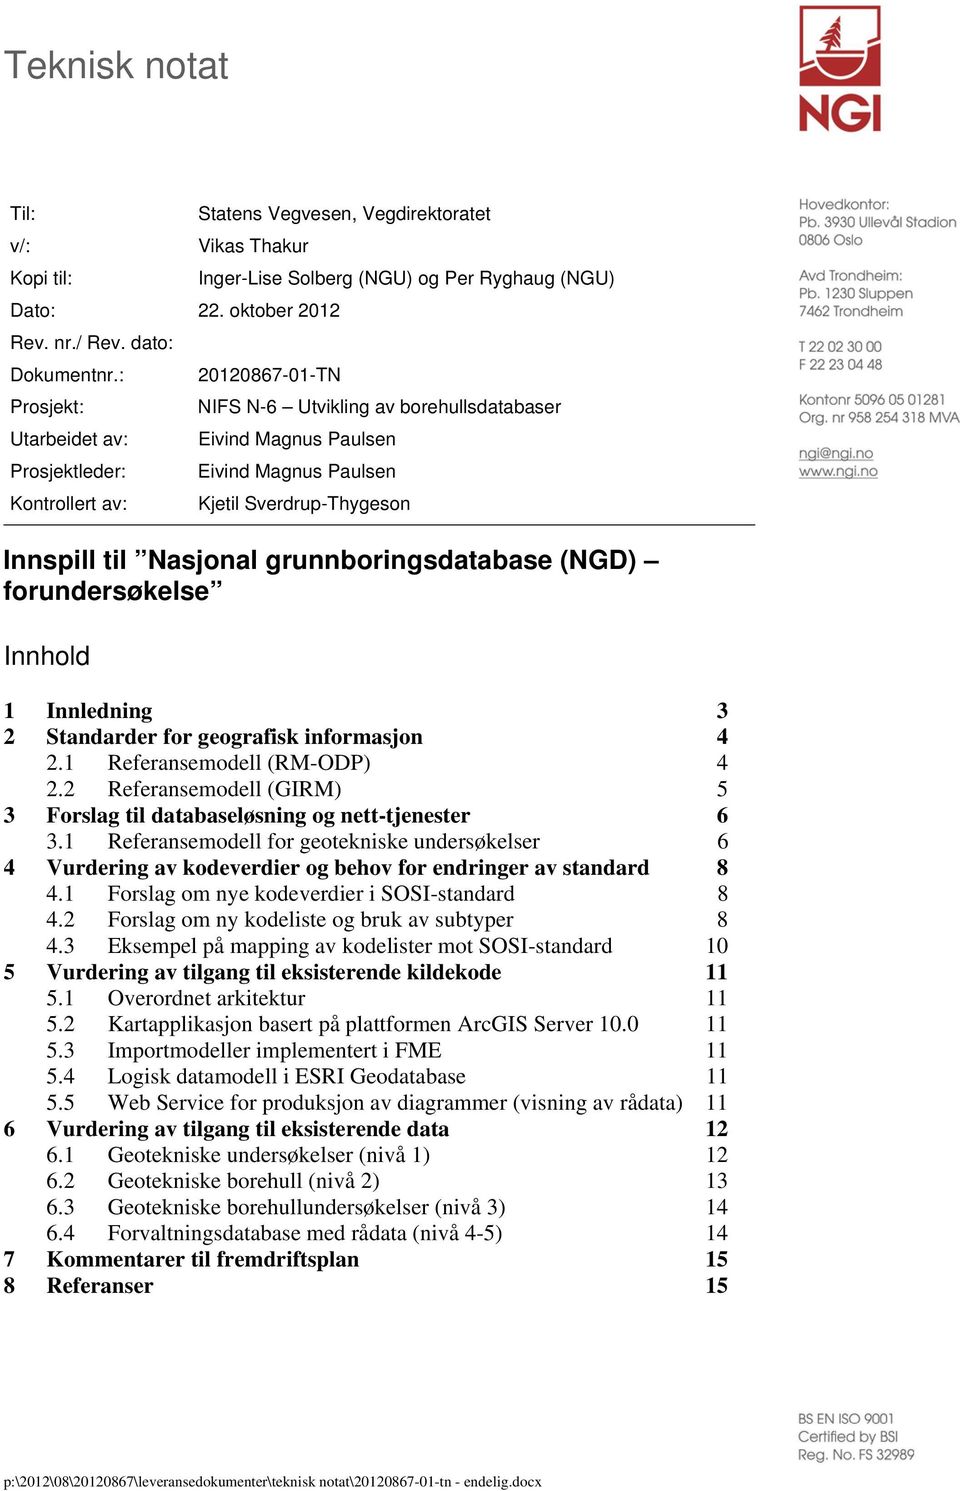 Paulsen Kjetil Sverdrup-Thygeson Innspill til Nasjonal grunnboringsdatabase (NGD) forundersøkelse Innhold 1 Innledning 3 2 Standarder for geografisk informasjon 4 2.1 Referansemodell (RM-ODP) 4 2.